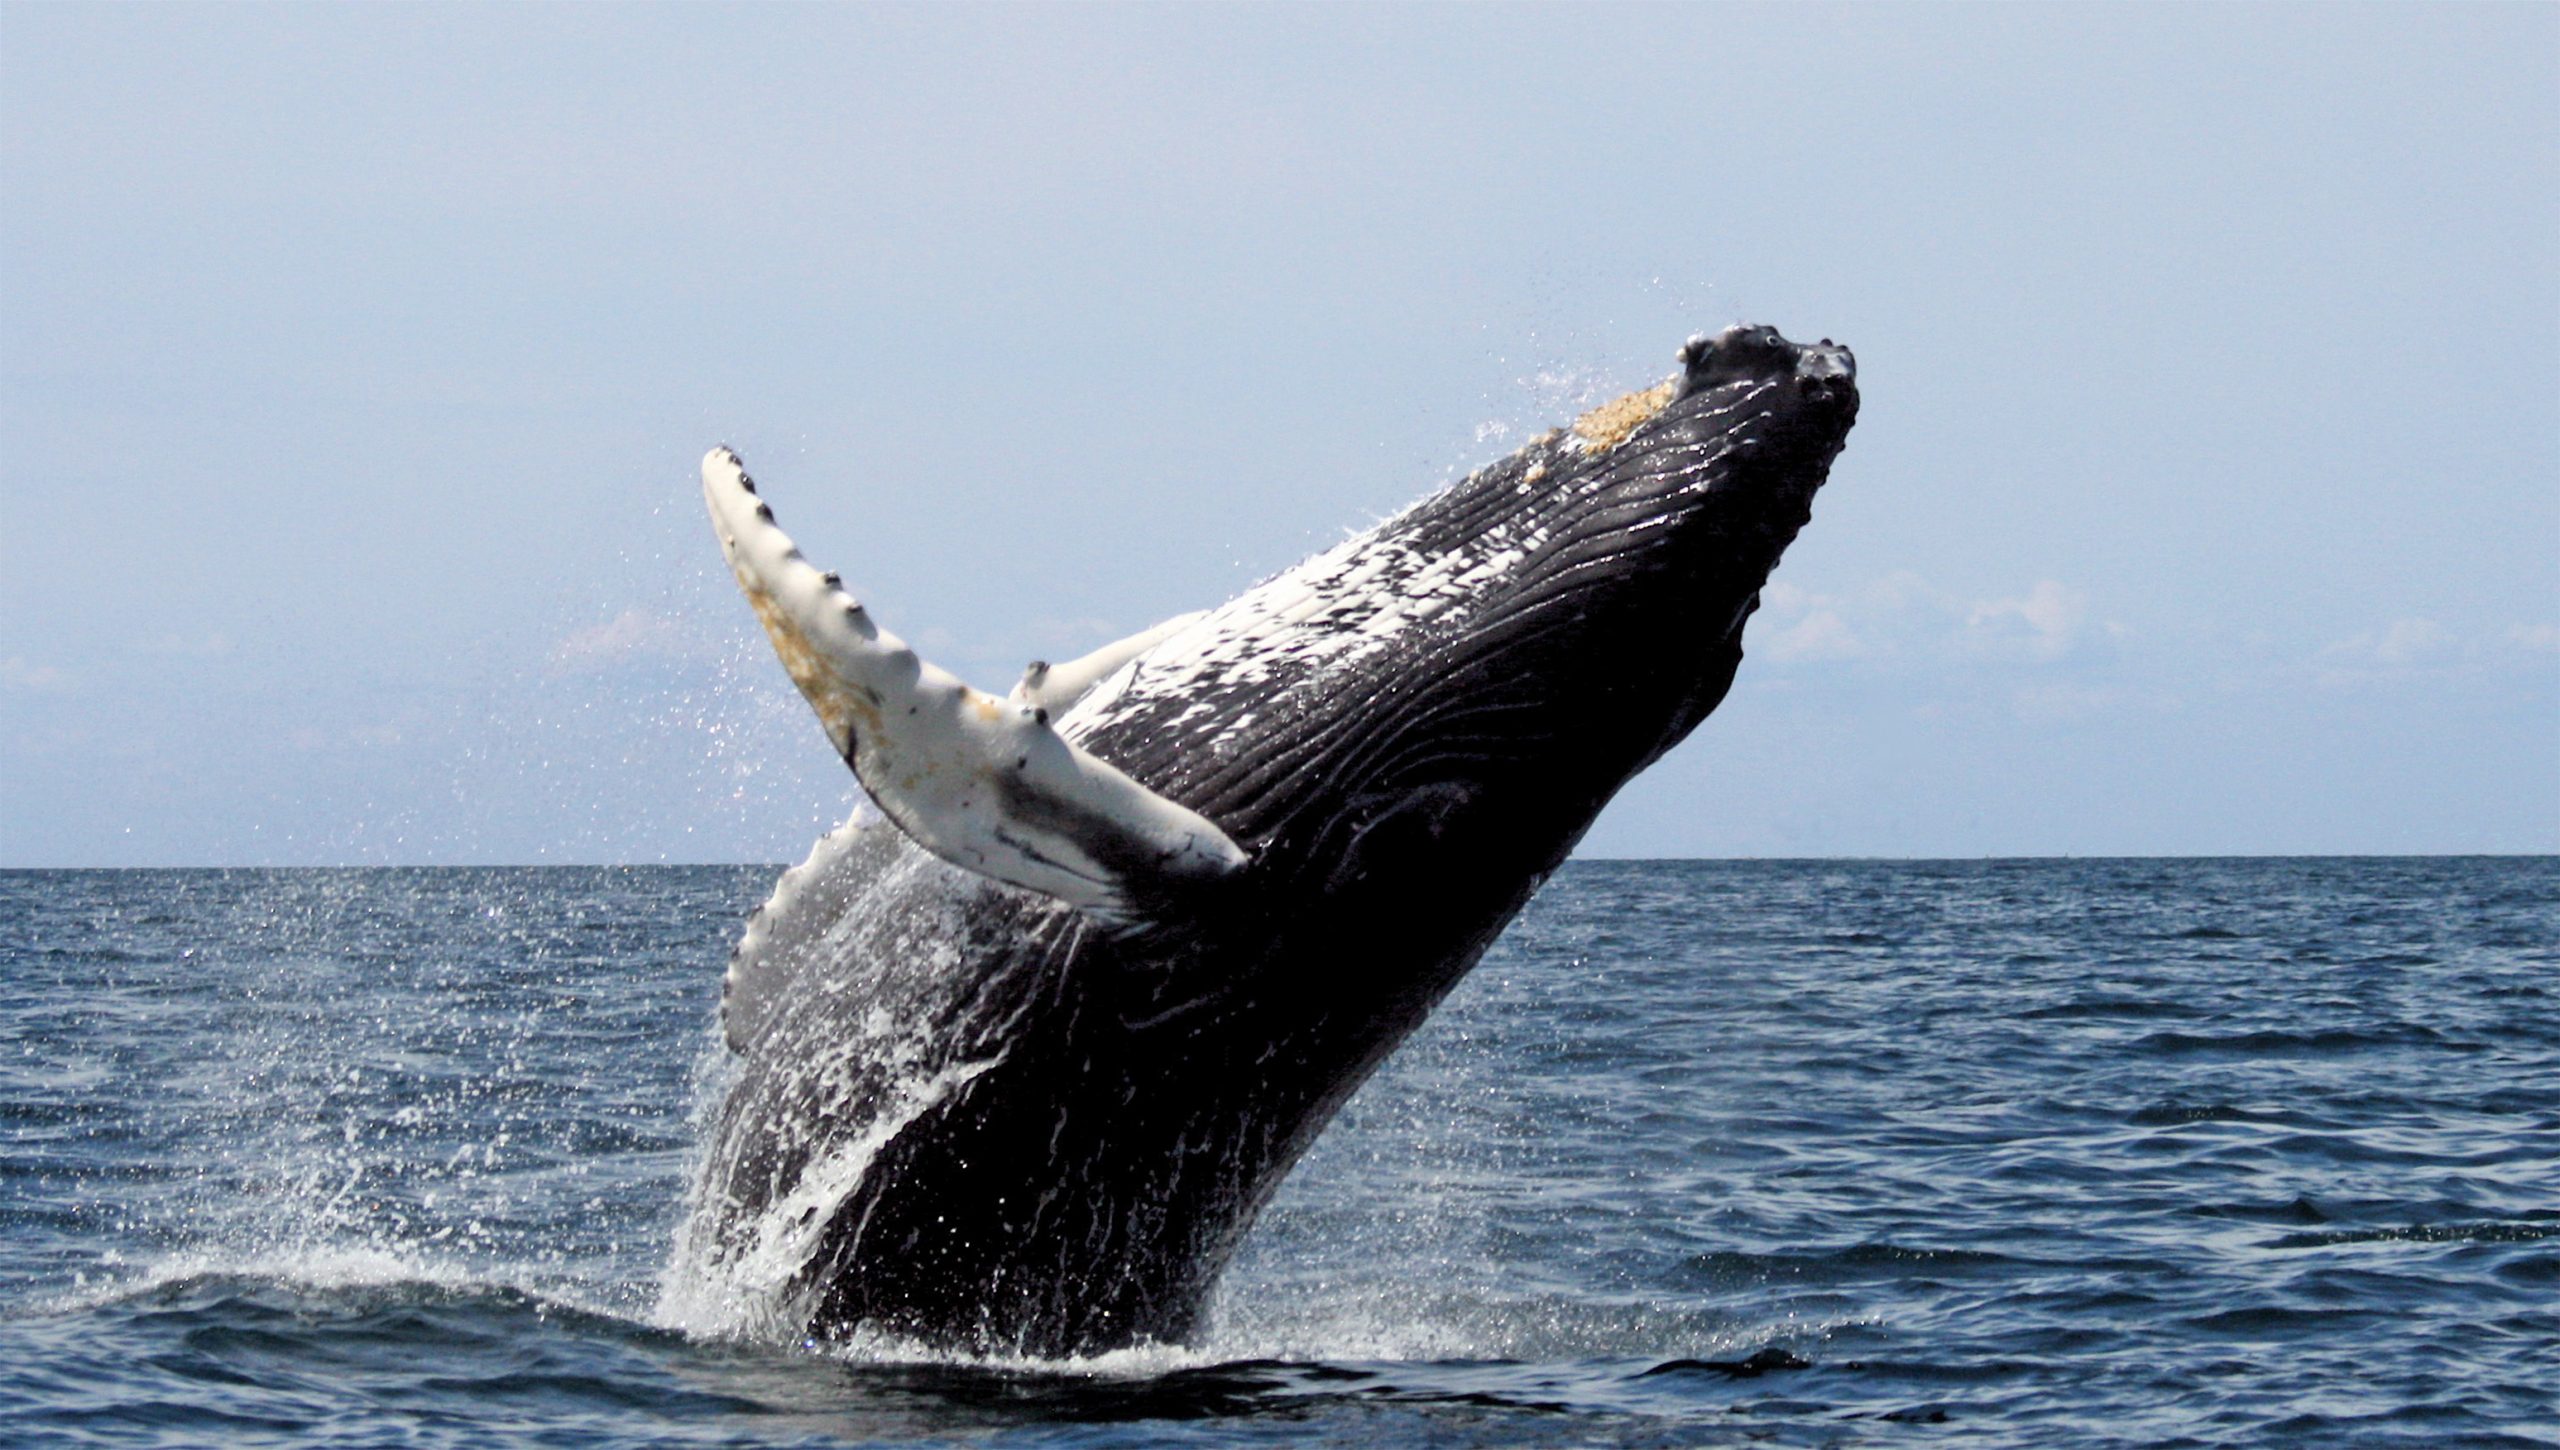 Αυστραλία: Δύτης κινηματογράφησε μεγάπτερη φάλαινα μεγέθους 10 μέτρων (βίντεο)